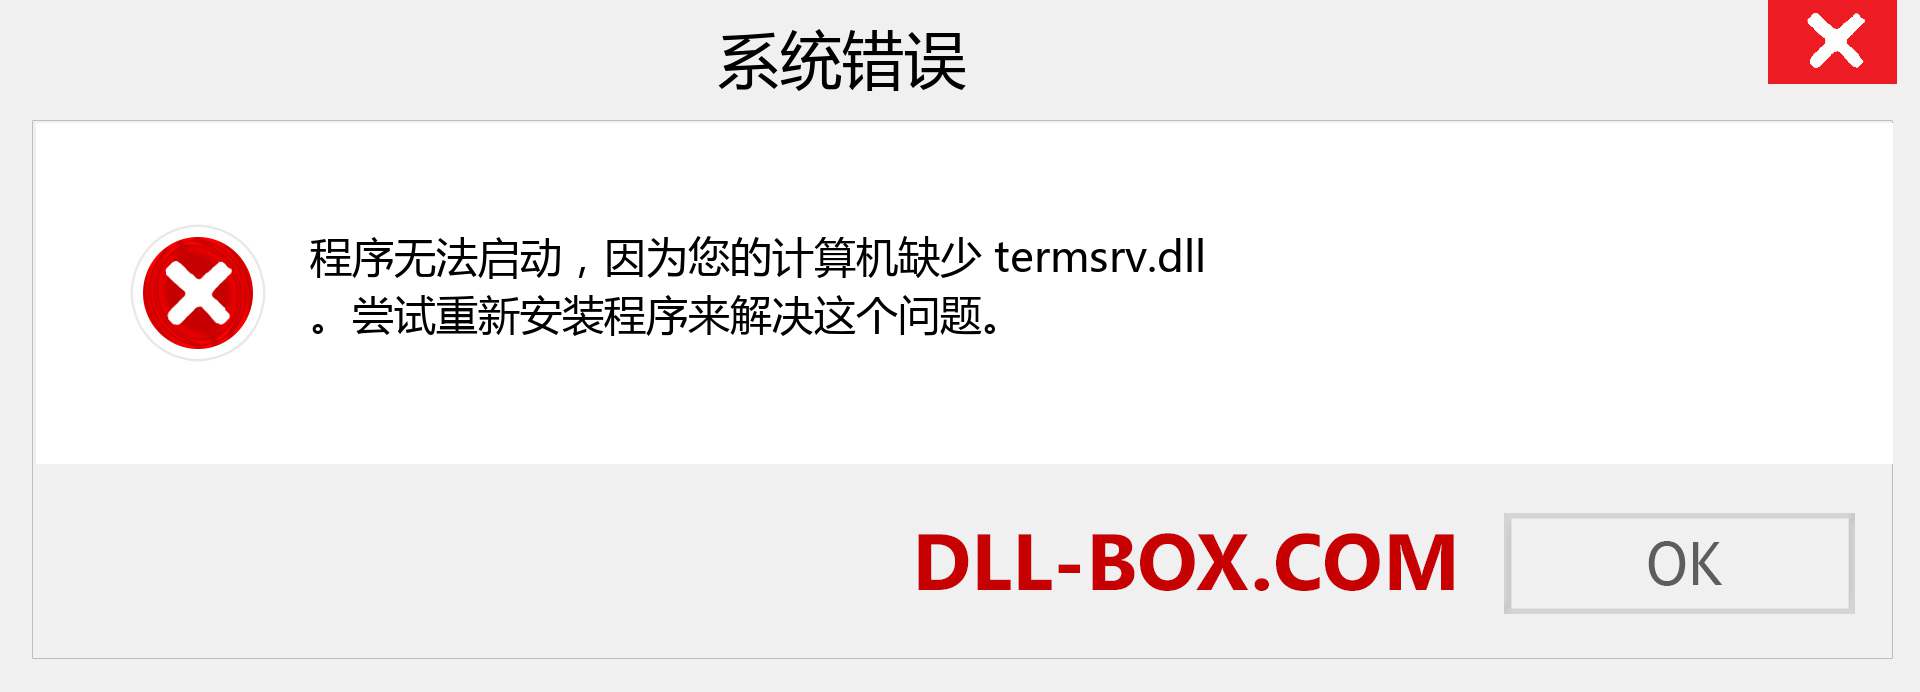 termsrv.dll 文件丢失？。 适用于 Windows 7、8、10 的下载 - 修复 Windows、照片、图像上的 termsrv dll 丢失错误